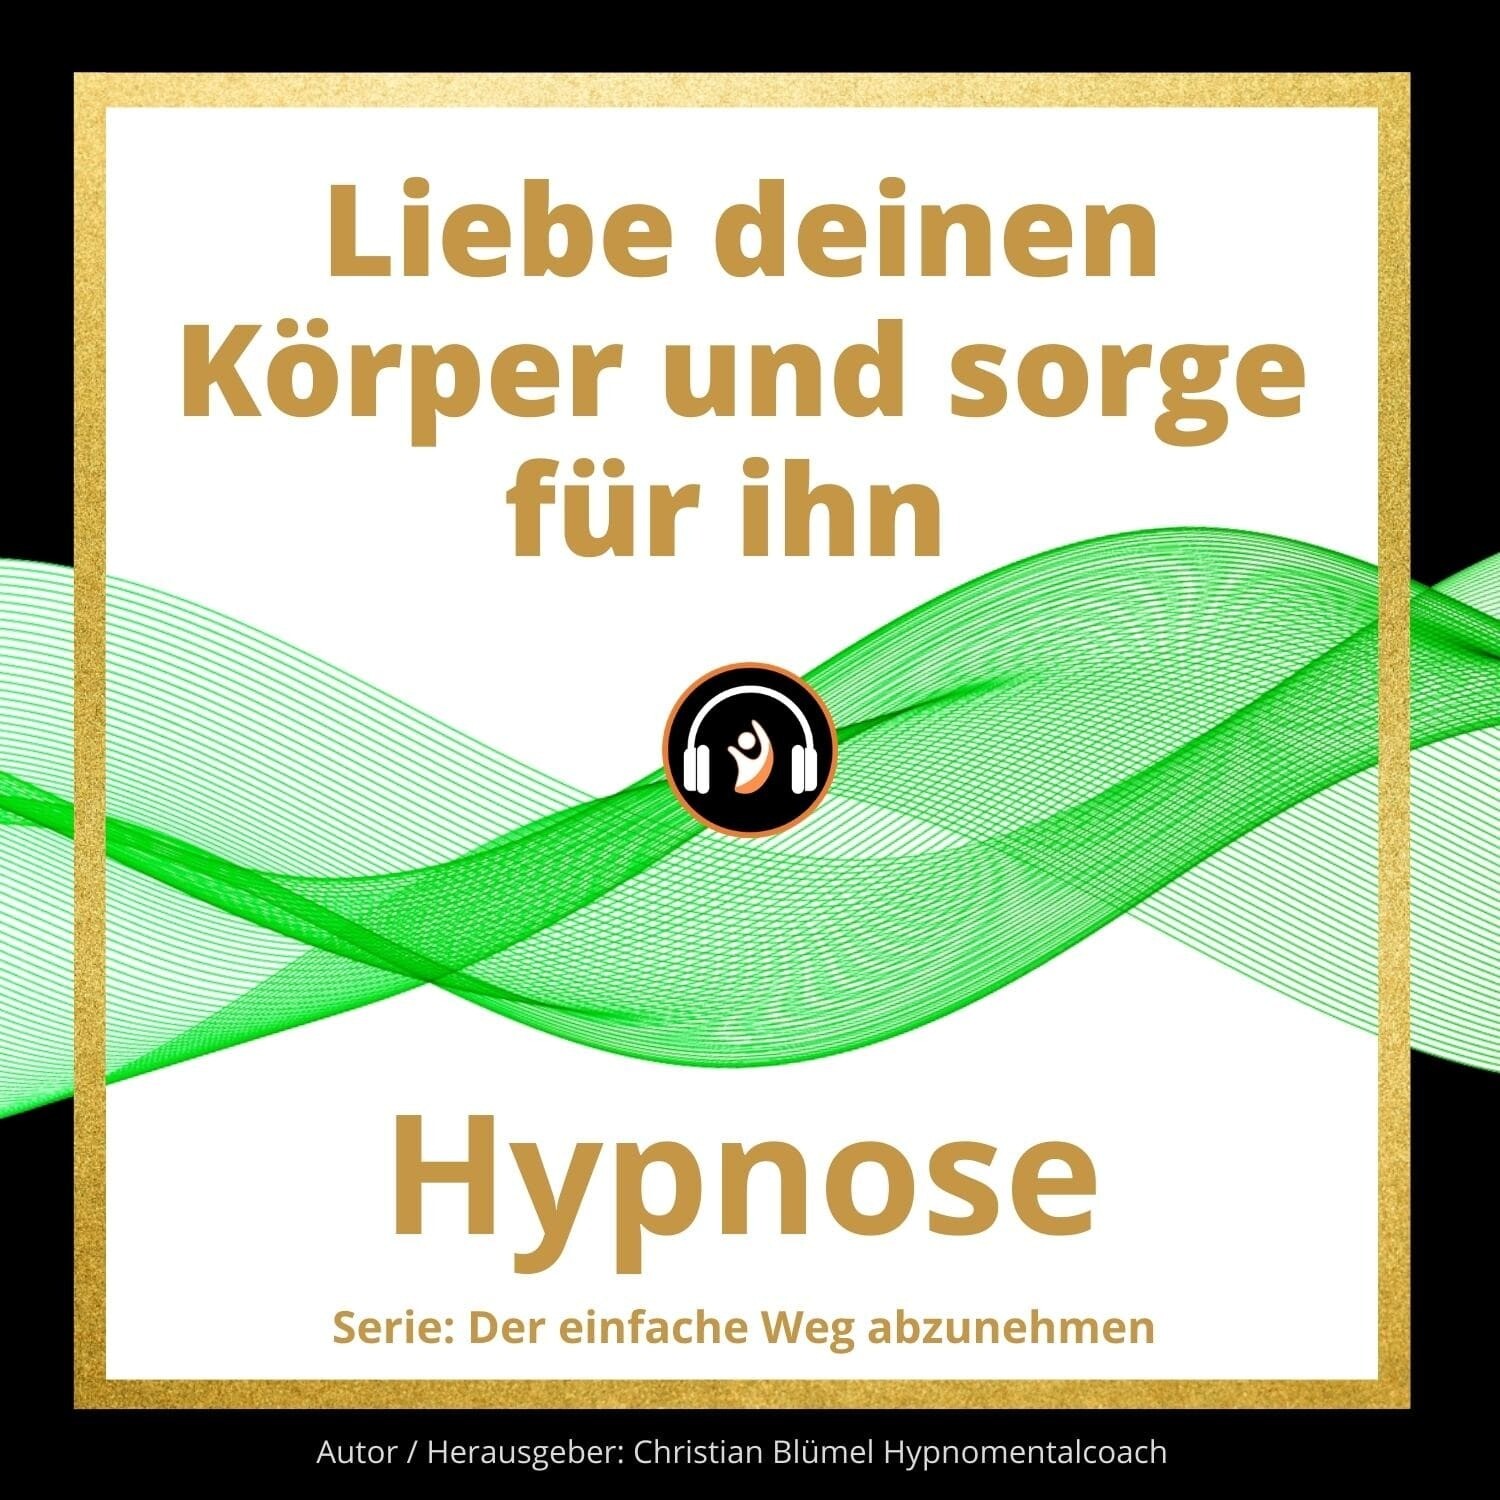 Audio Hypnose: Liebe deinen Körper und sorge für ihn